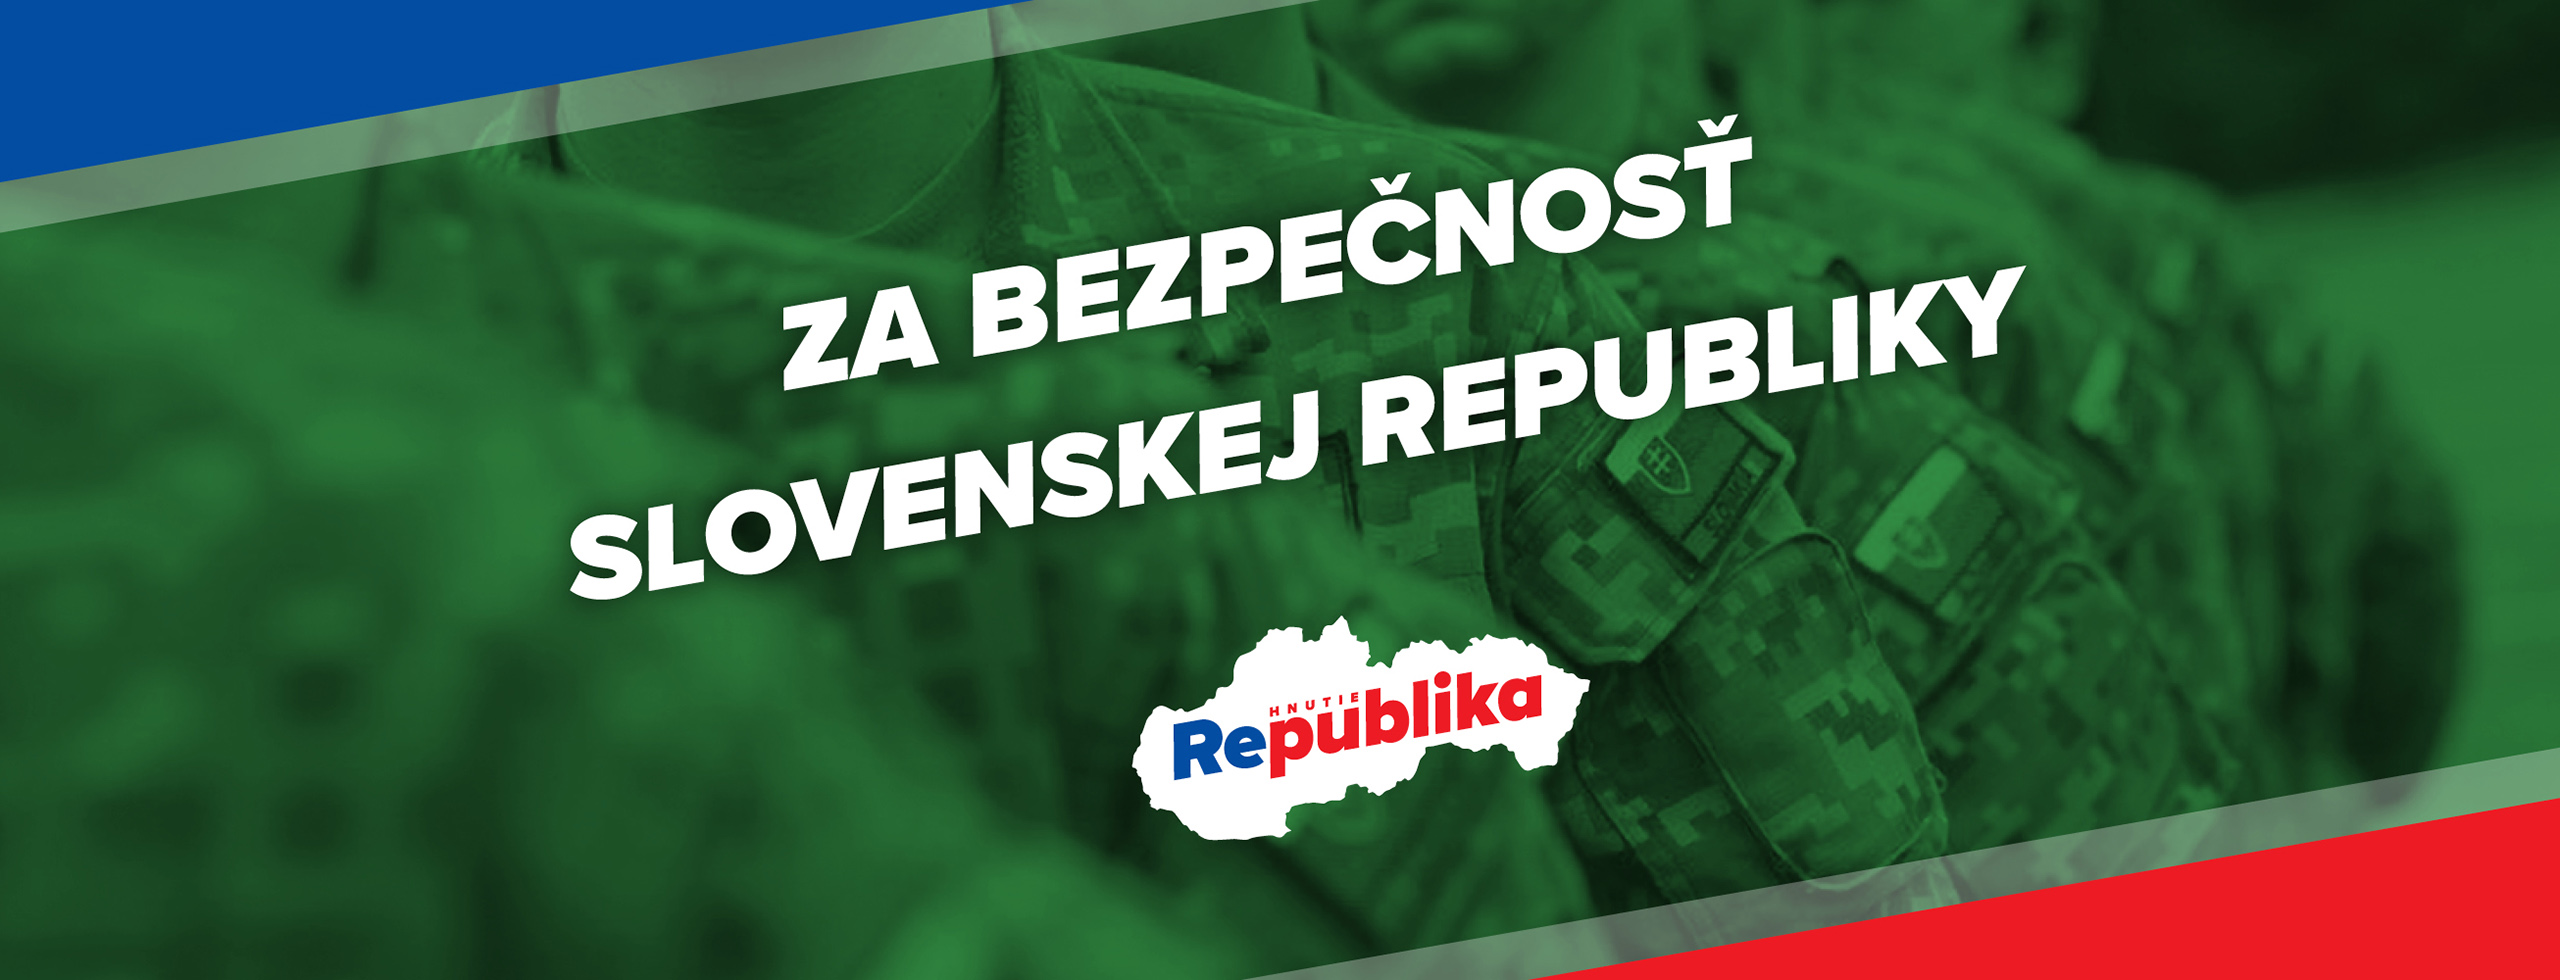 Za bezpecnost Slovenskej republiky